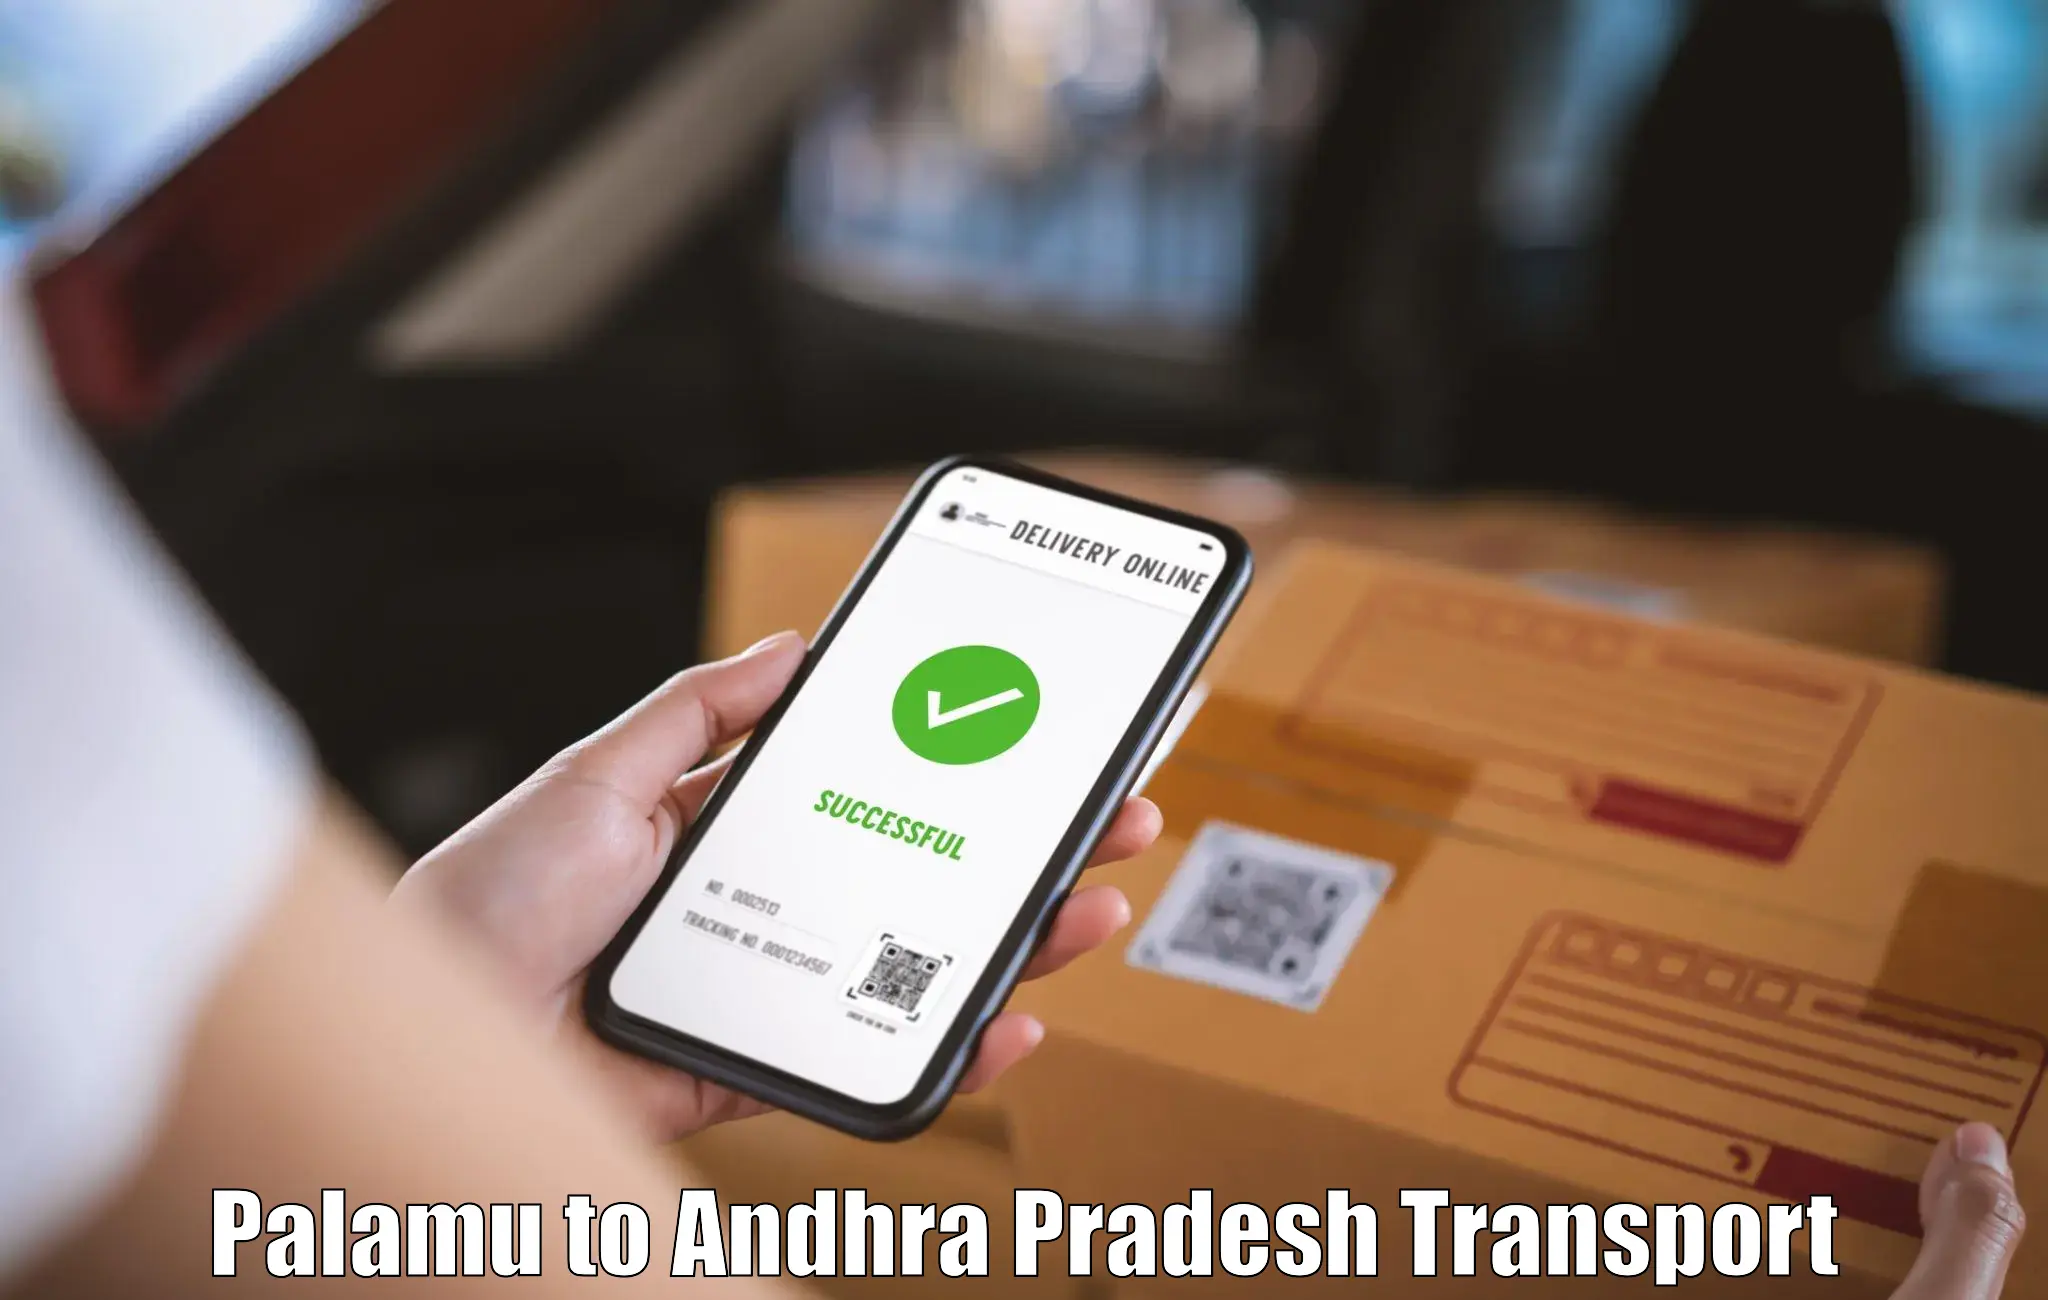 Shipping partner Palamu to Andhra Pradesh